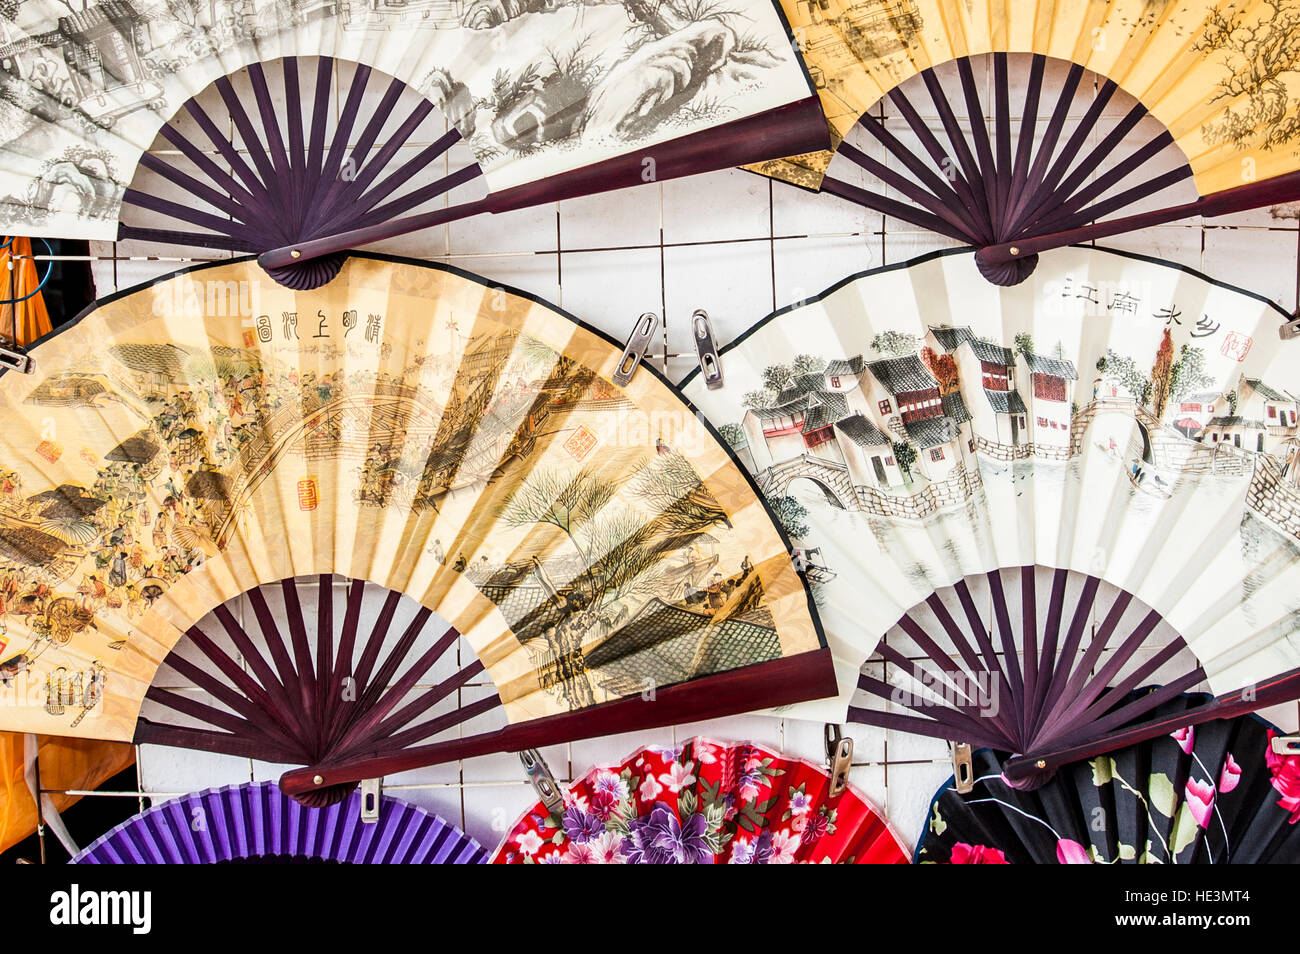 Papier-Seide Fans im Markt Souvenirs shop Wasser Kanal Dorf von Tongli, China. Stockfoto